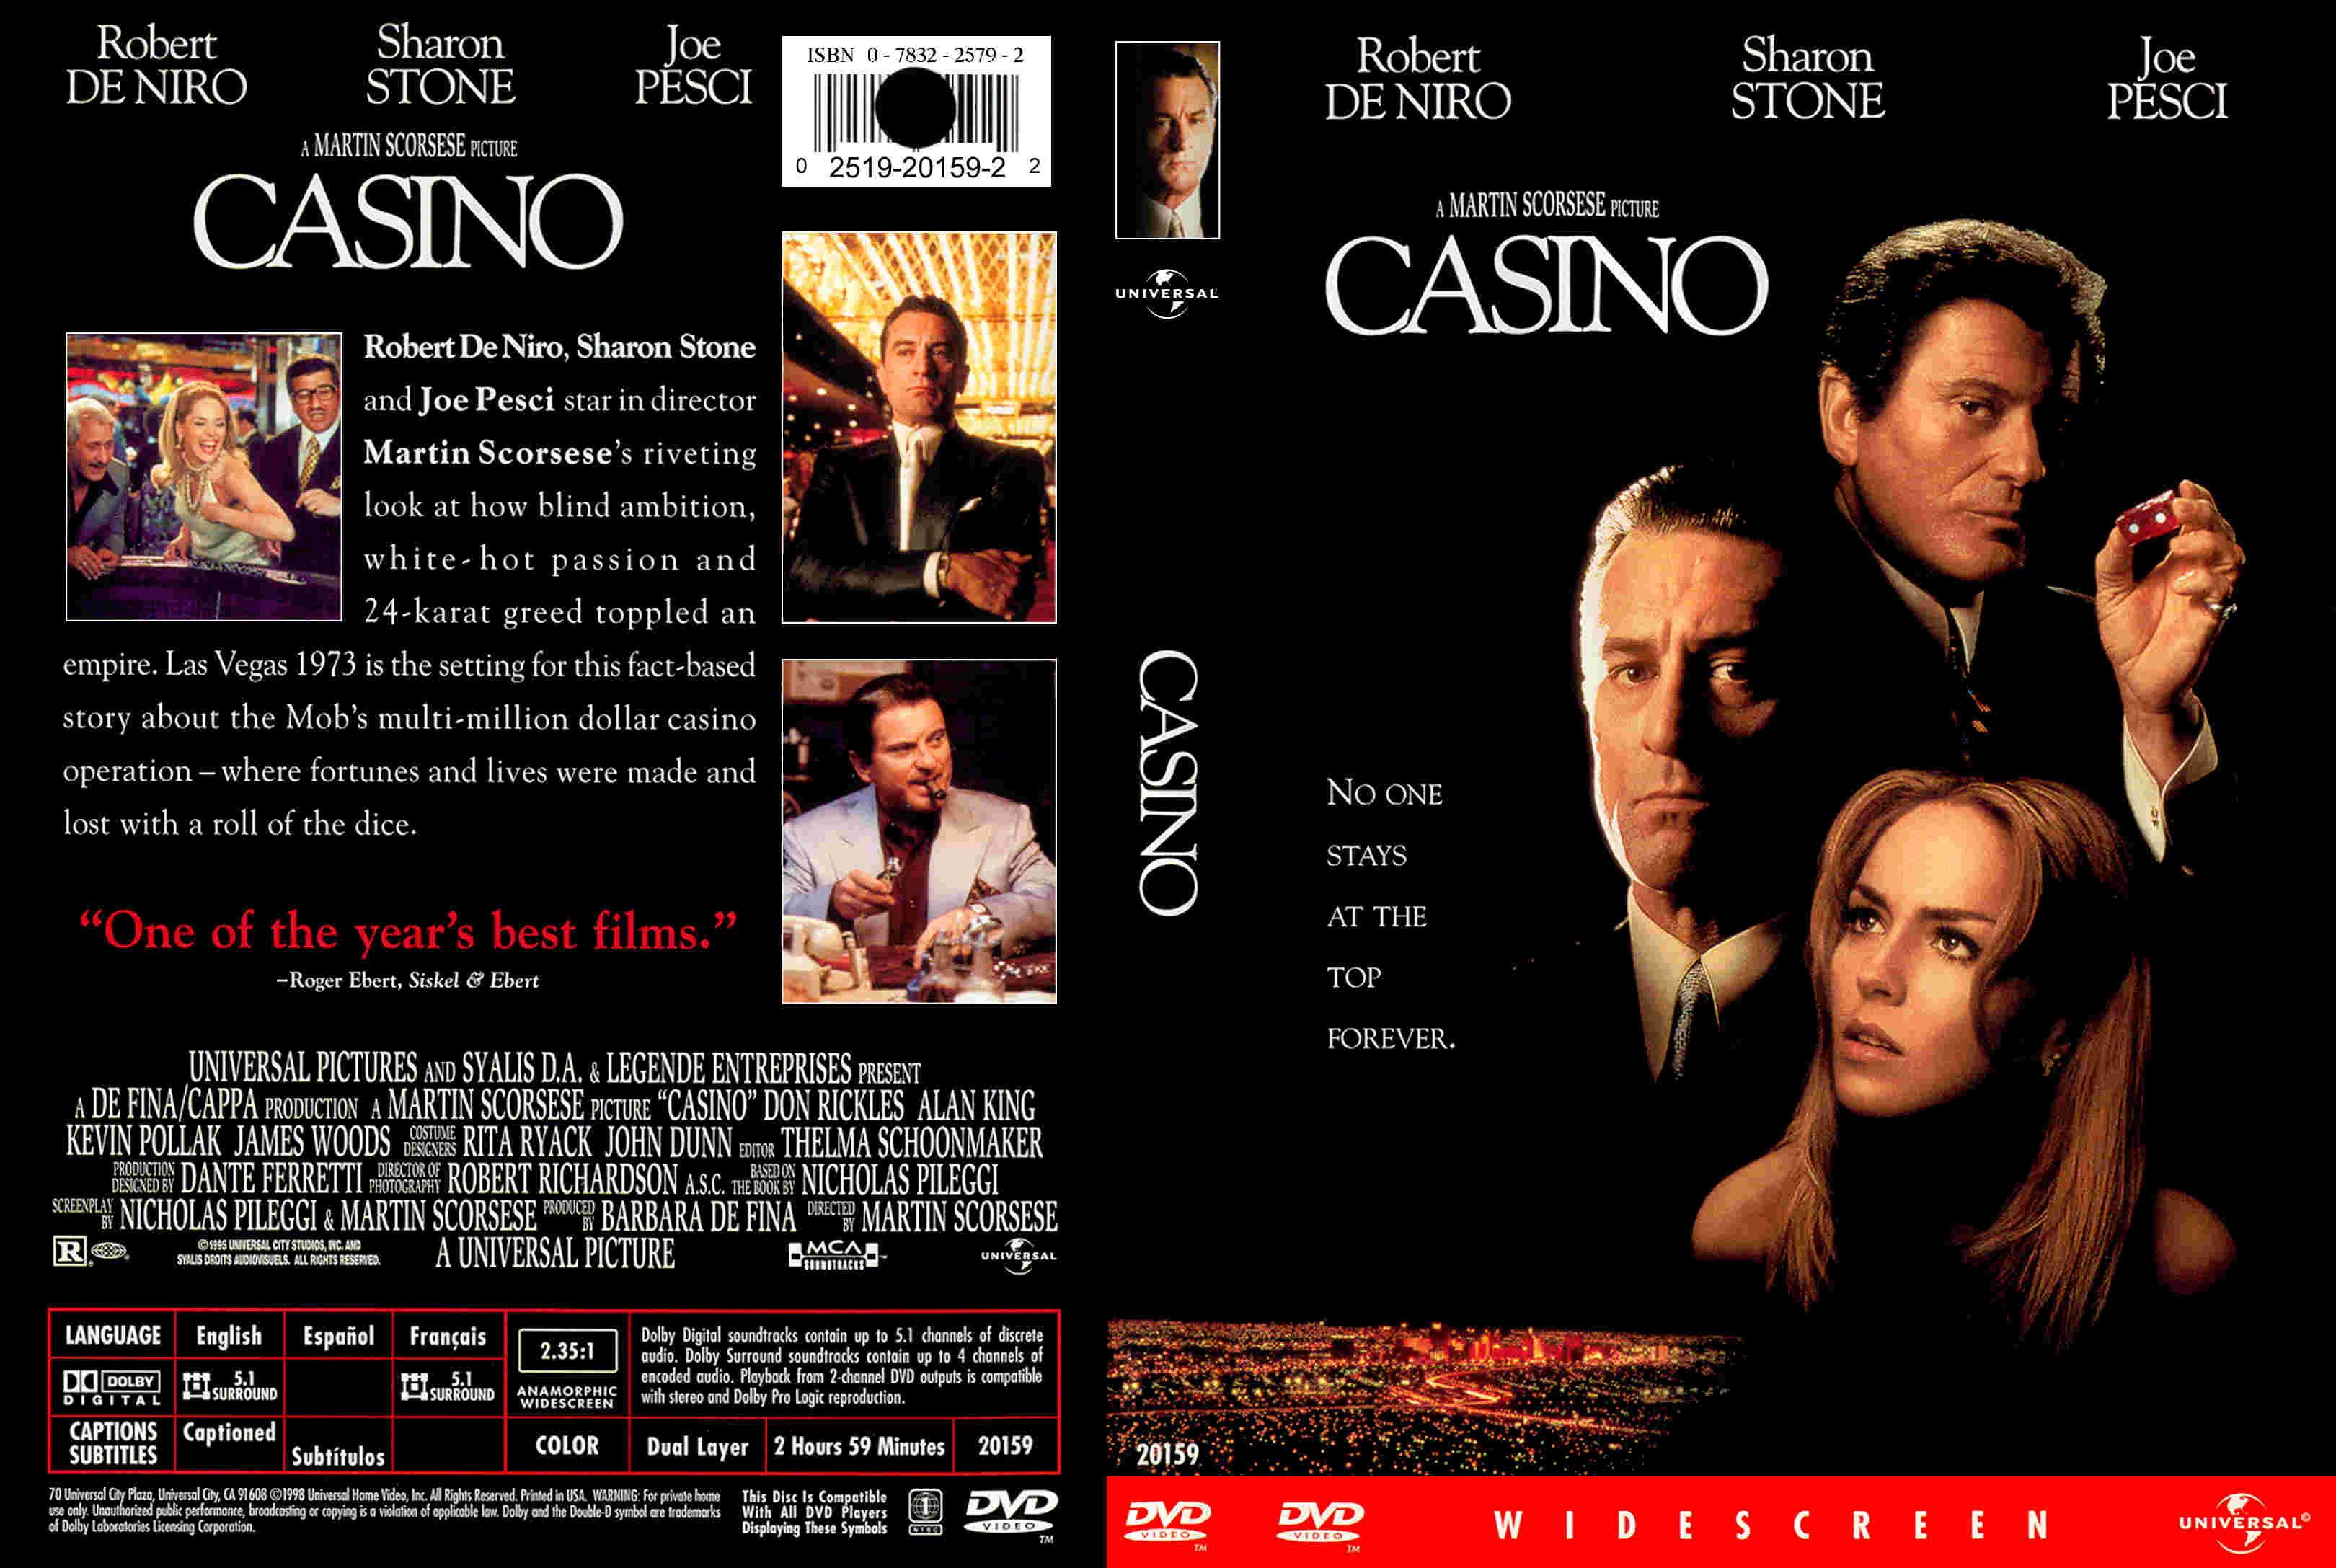 casino movie online free hd